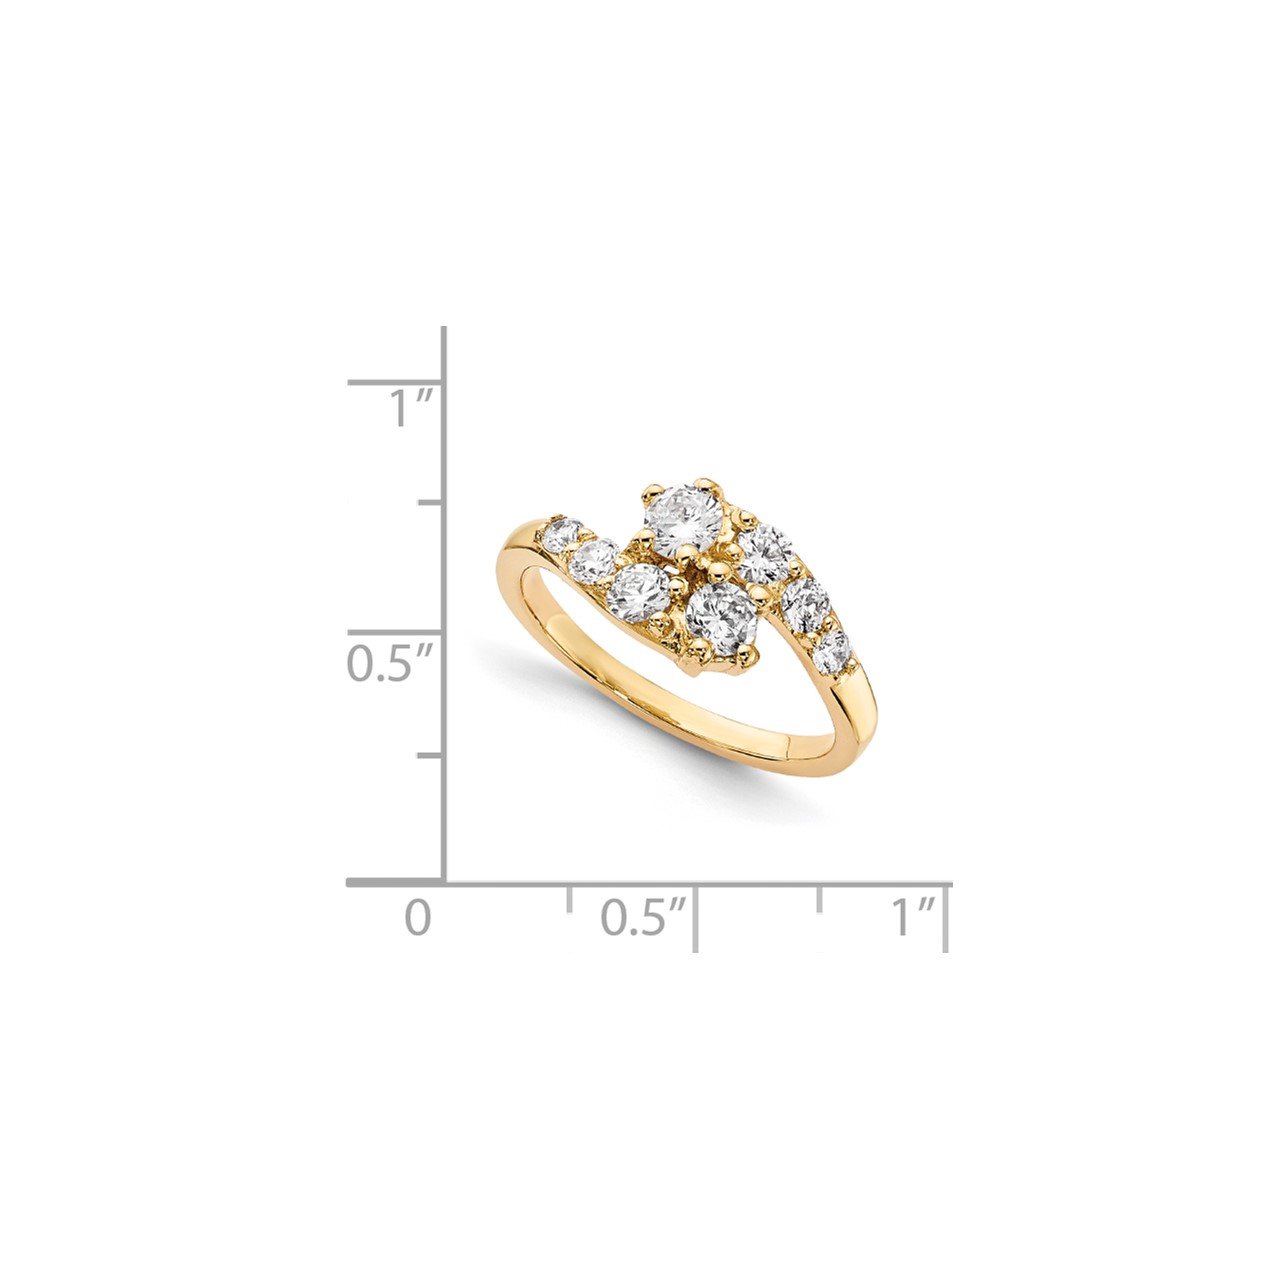 14KY AAA Diamond 2-stone Ring Semi-Mount - 2.6 mm center stones-6